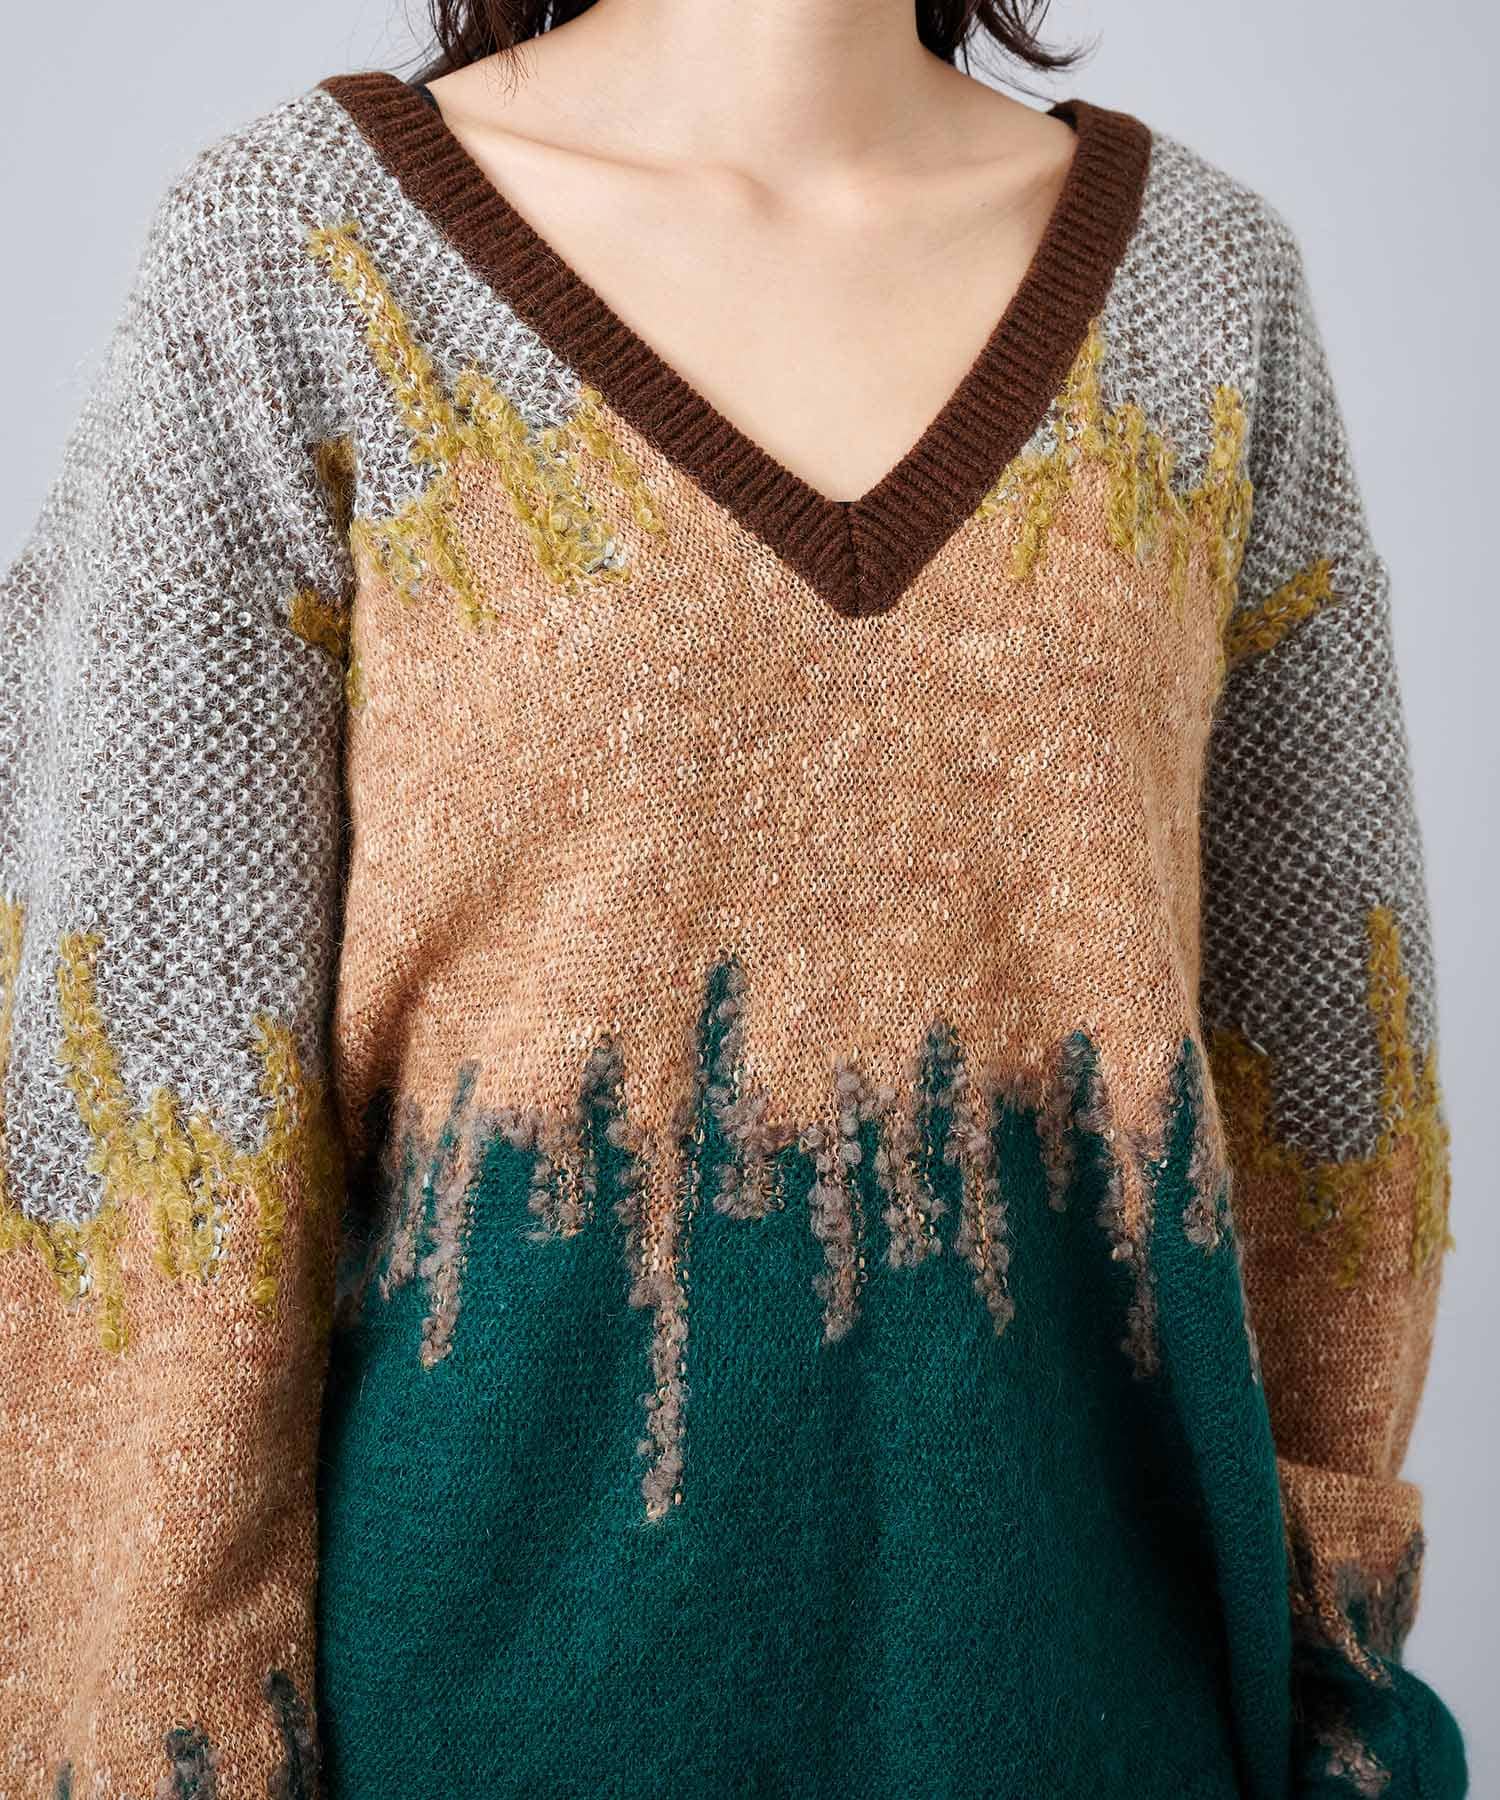 MURRAL/ミューラル】Water mirror knit sweater/ウォーターミラー